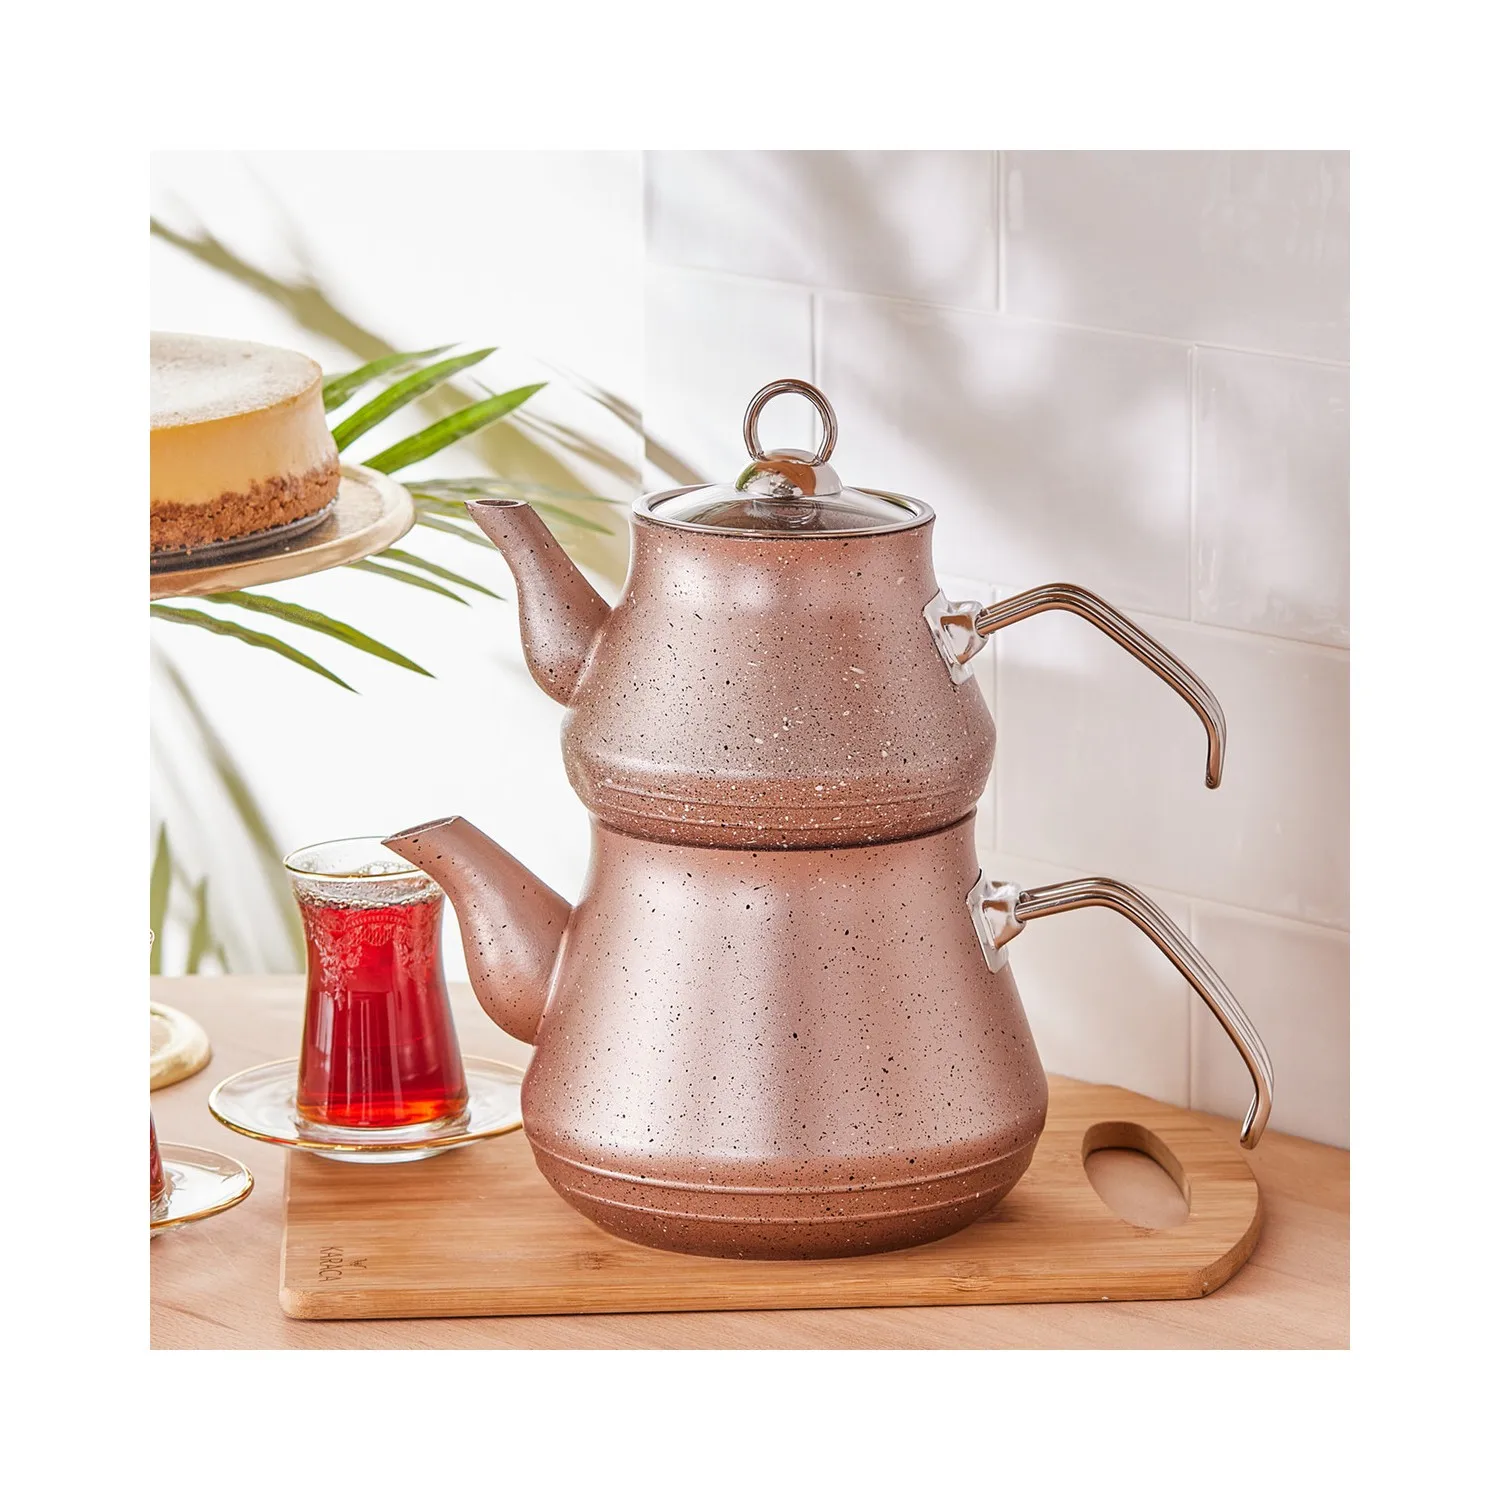 

Чайный набор Karaca из био-гранита розовый огнестойкий антипригарный качественный прочный твердый устойчивый к пятнам поверхность легко испо...